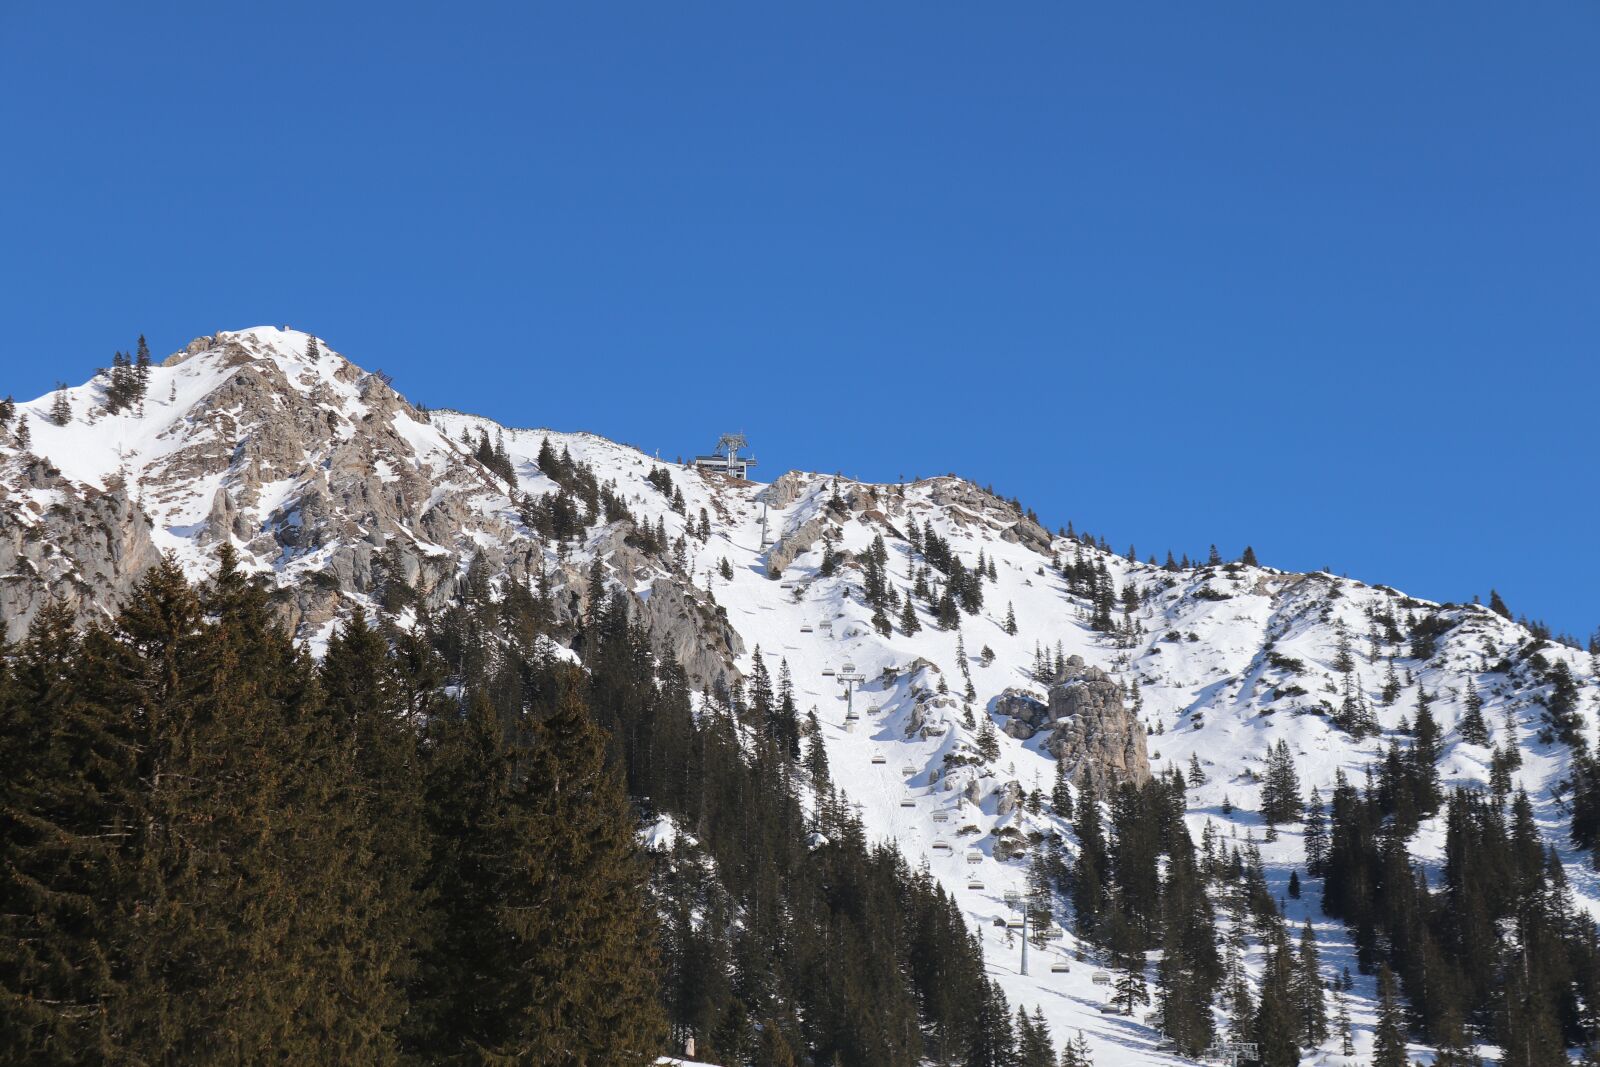 Canon EOS 200D (EOS Rebel SL2 / EOS Kiss X9) sample photo. Skiing, snow, mountain photography